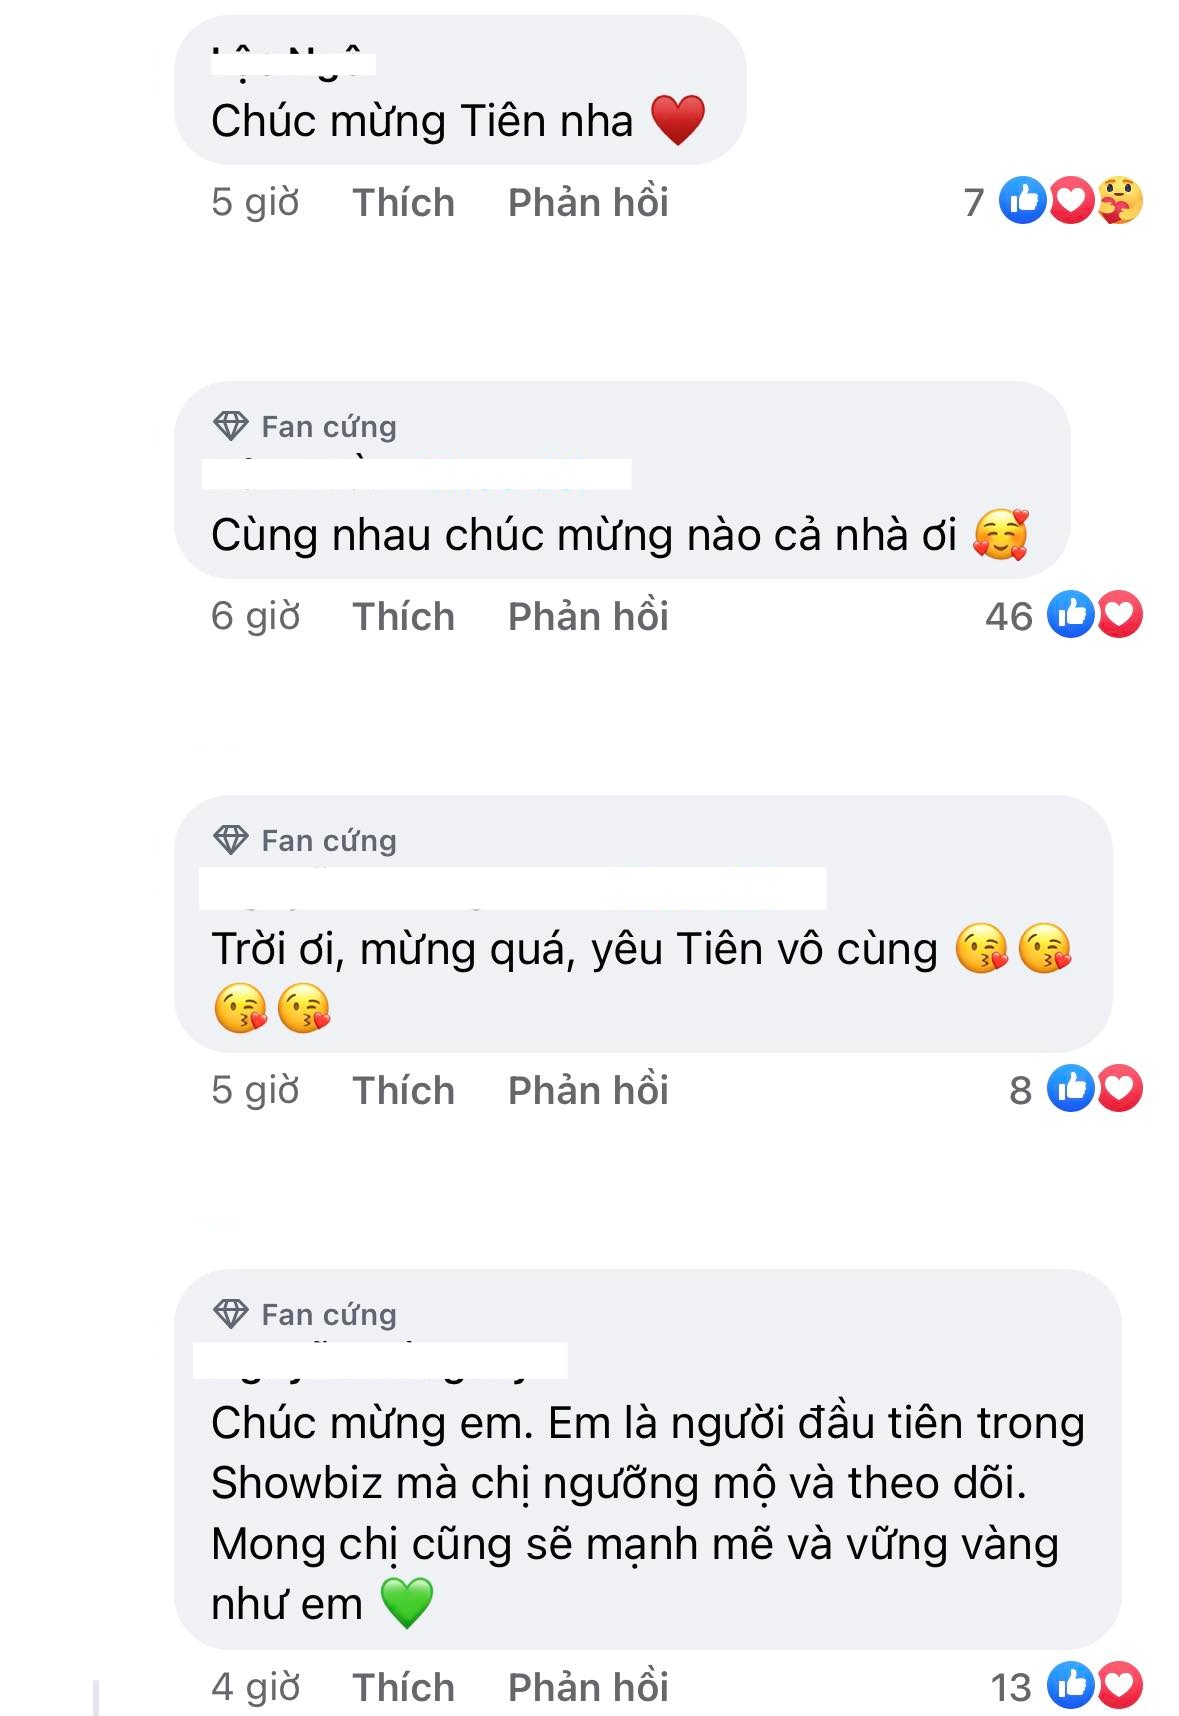 Sau khi Hoa hậu Thùy Tiên thắng kiện, nghệ sĩ Vbiz có những phản ứng thế nào? - Ảnh 8